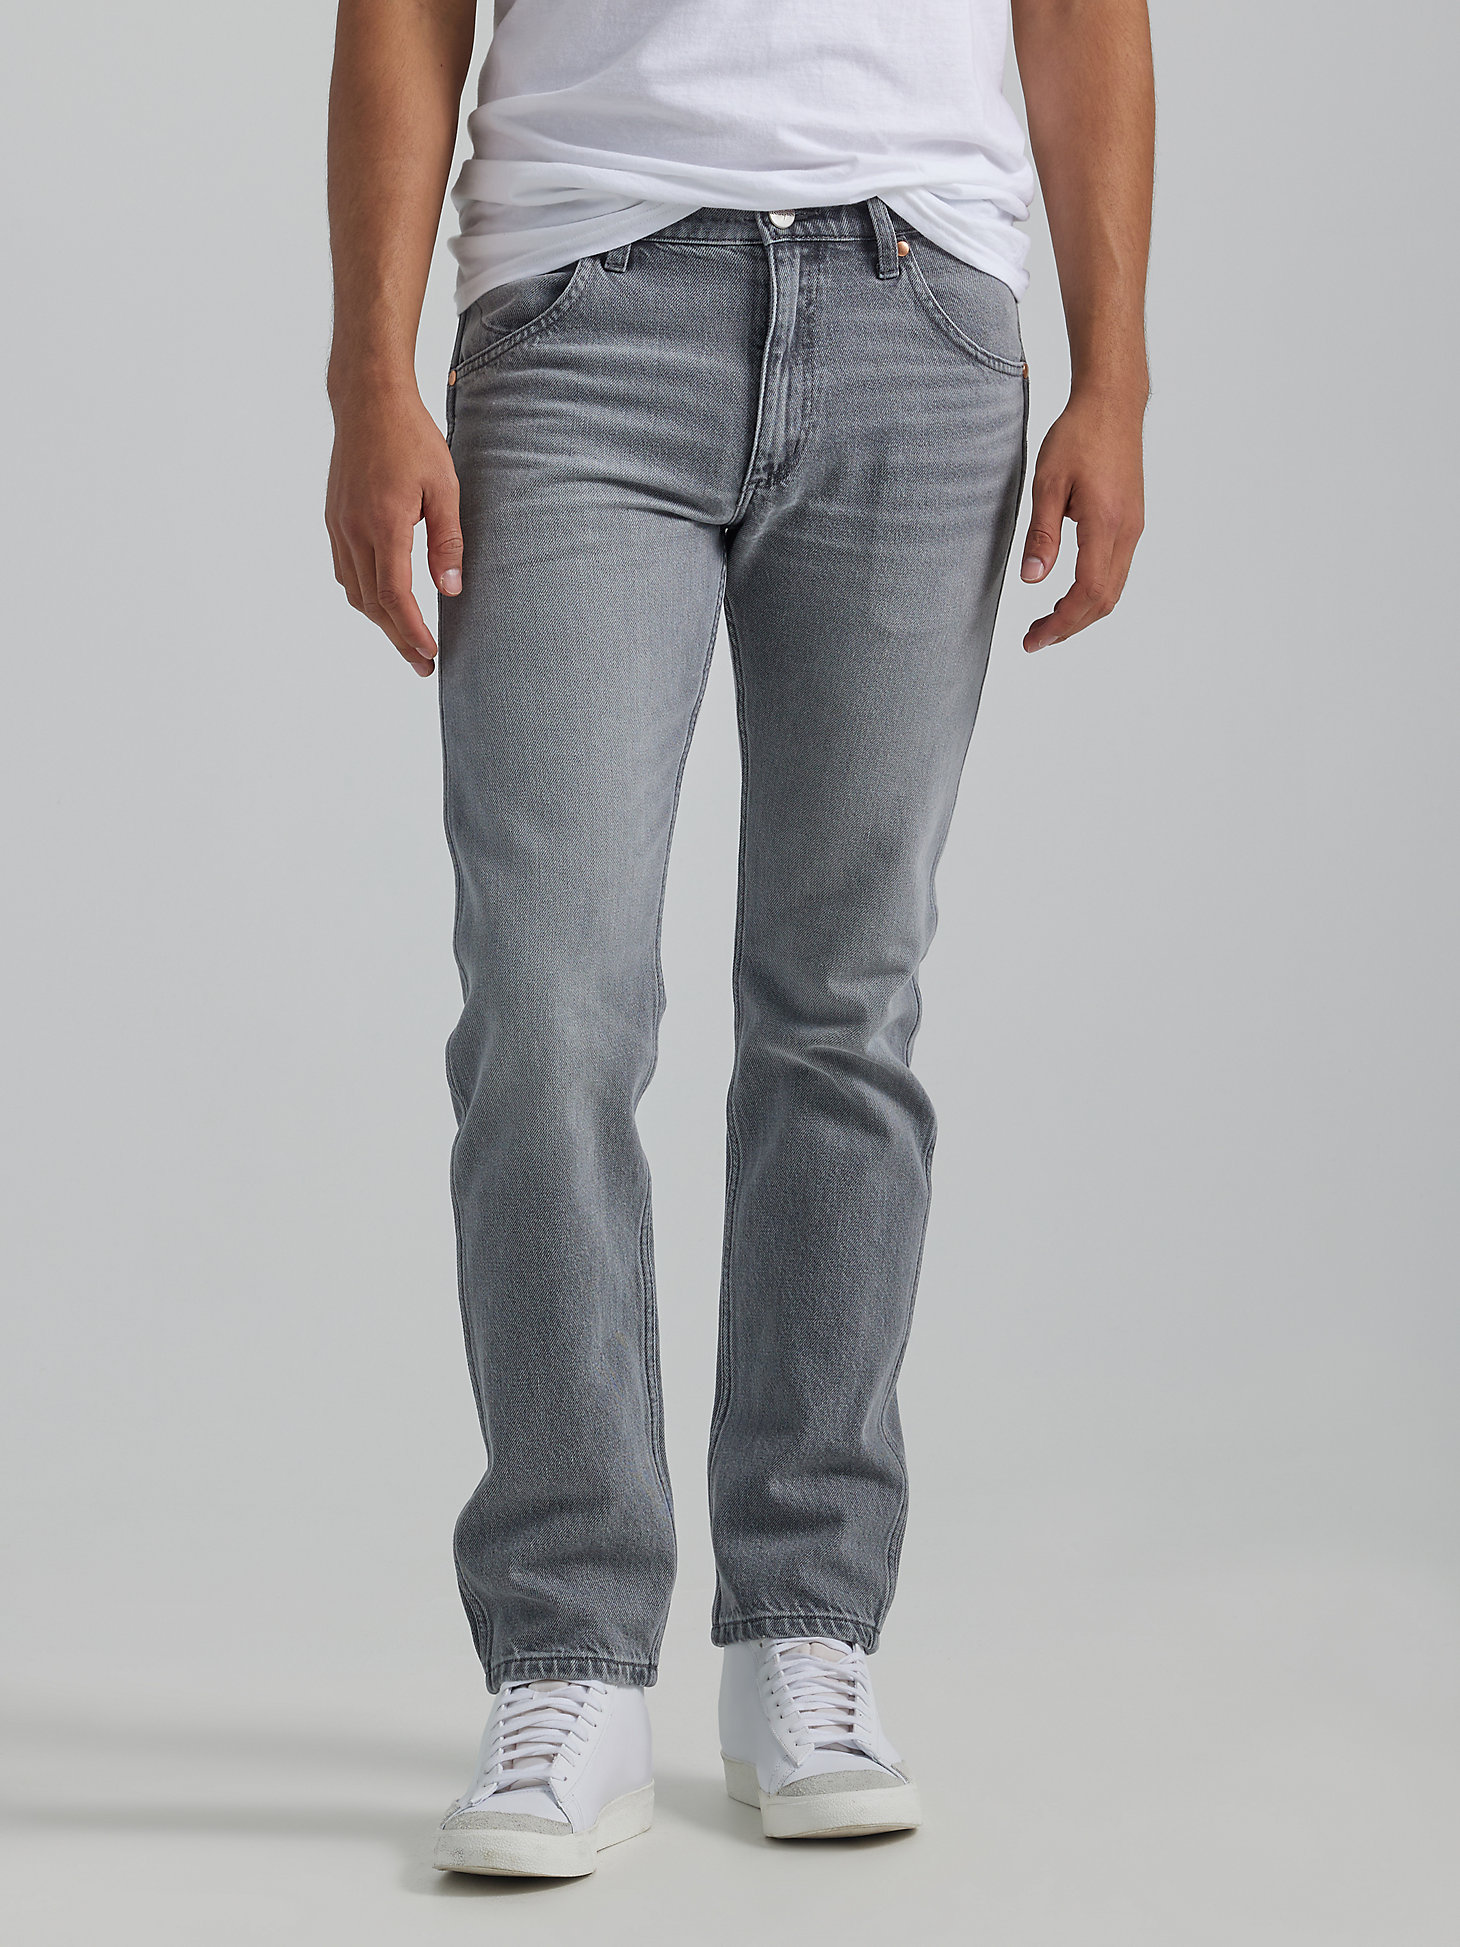 Wrangler ICONS™ 11MWZ Men's Slim Jean in Silver Lining alternative view 1